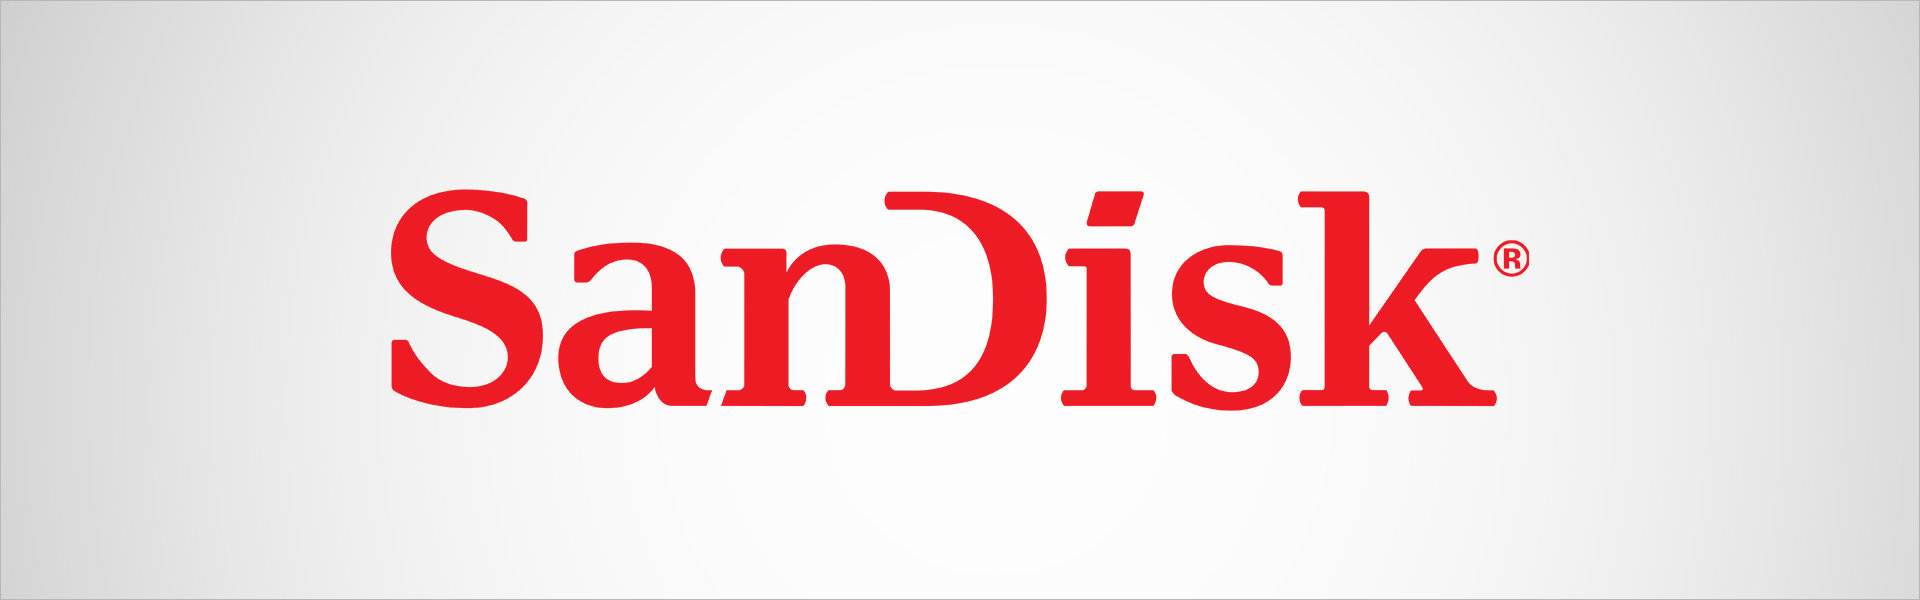 Sandisk Ultra Android 80MB SanDisk